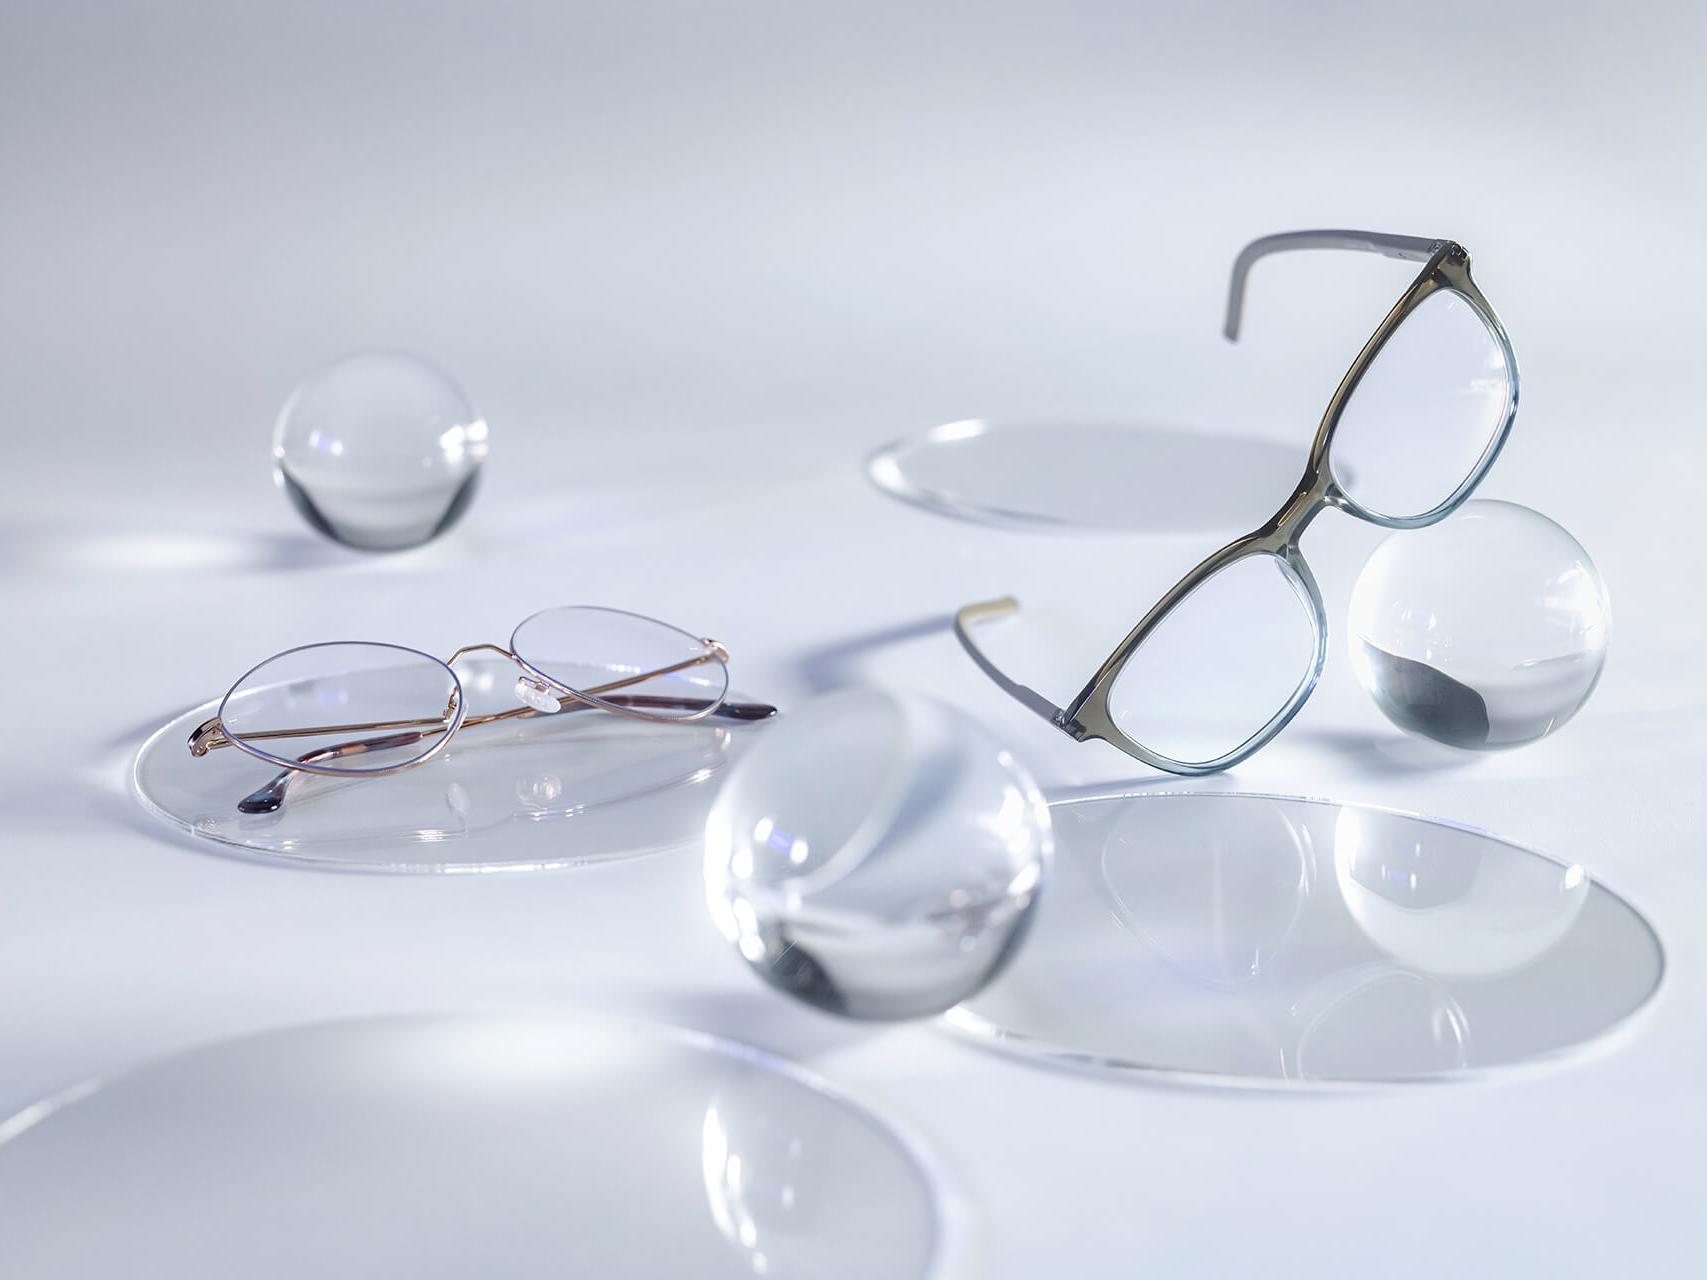 Gafas con lentes ZEISS y el tratamiento DuraVision® Silver, que no muestran reflejos en comparación con las esferas de cristal que las rodean.